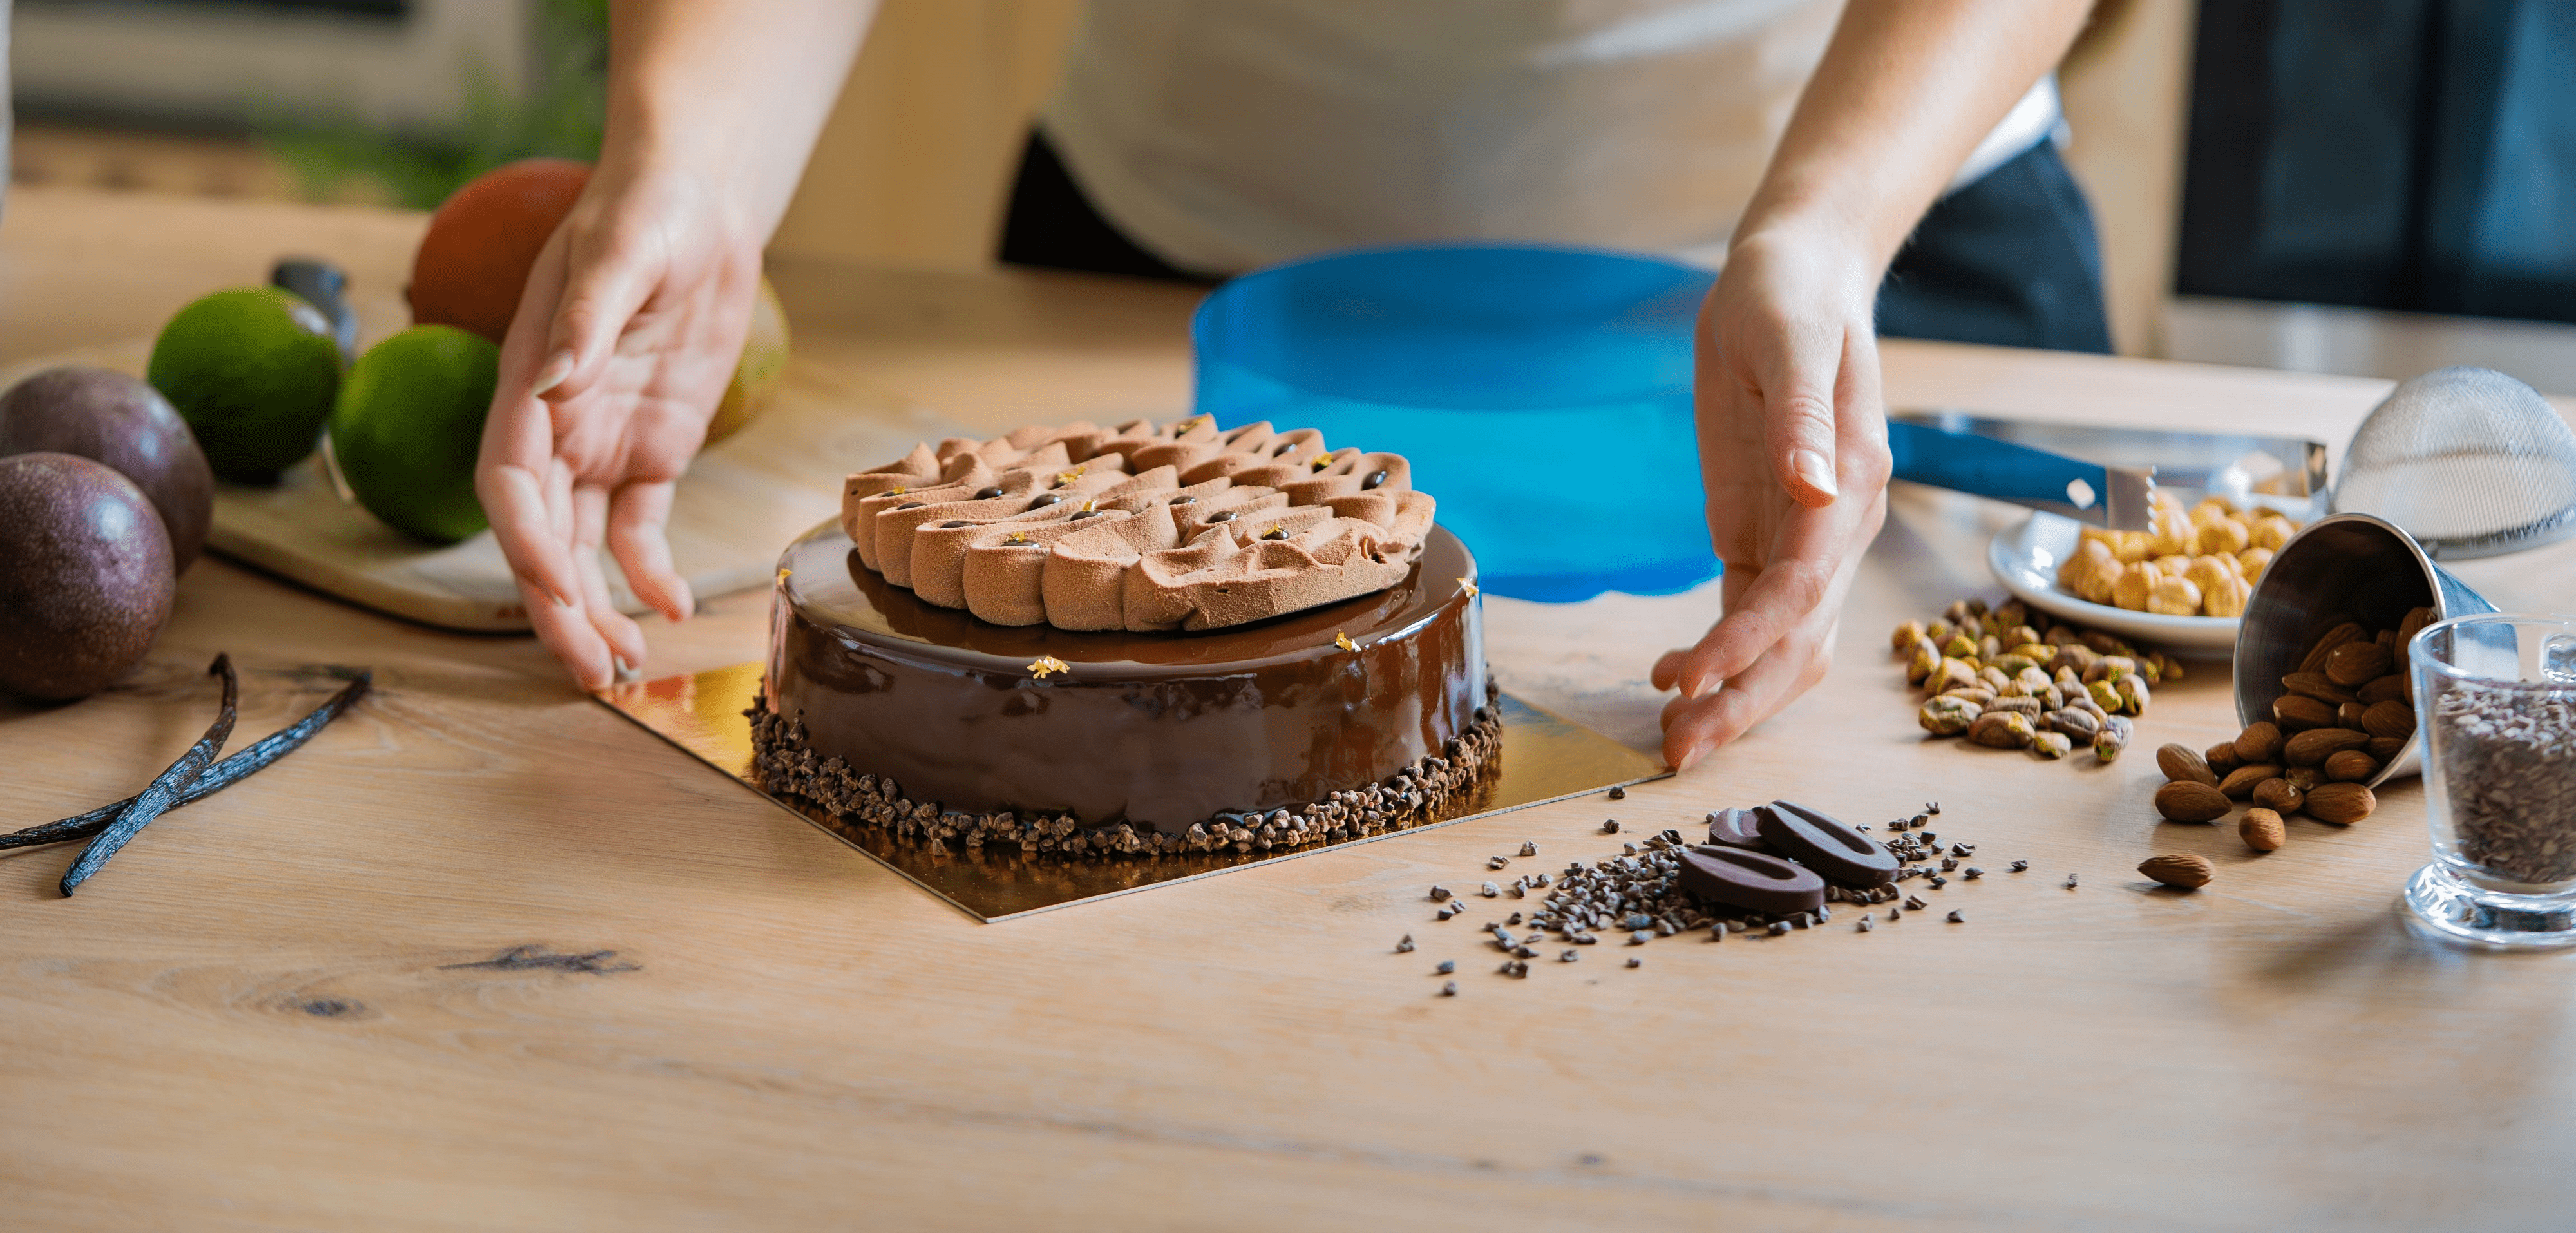 Moule à gâteau - Large choix à prix mini et Livraison rapide